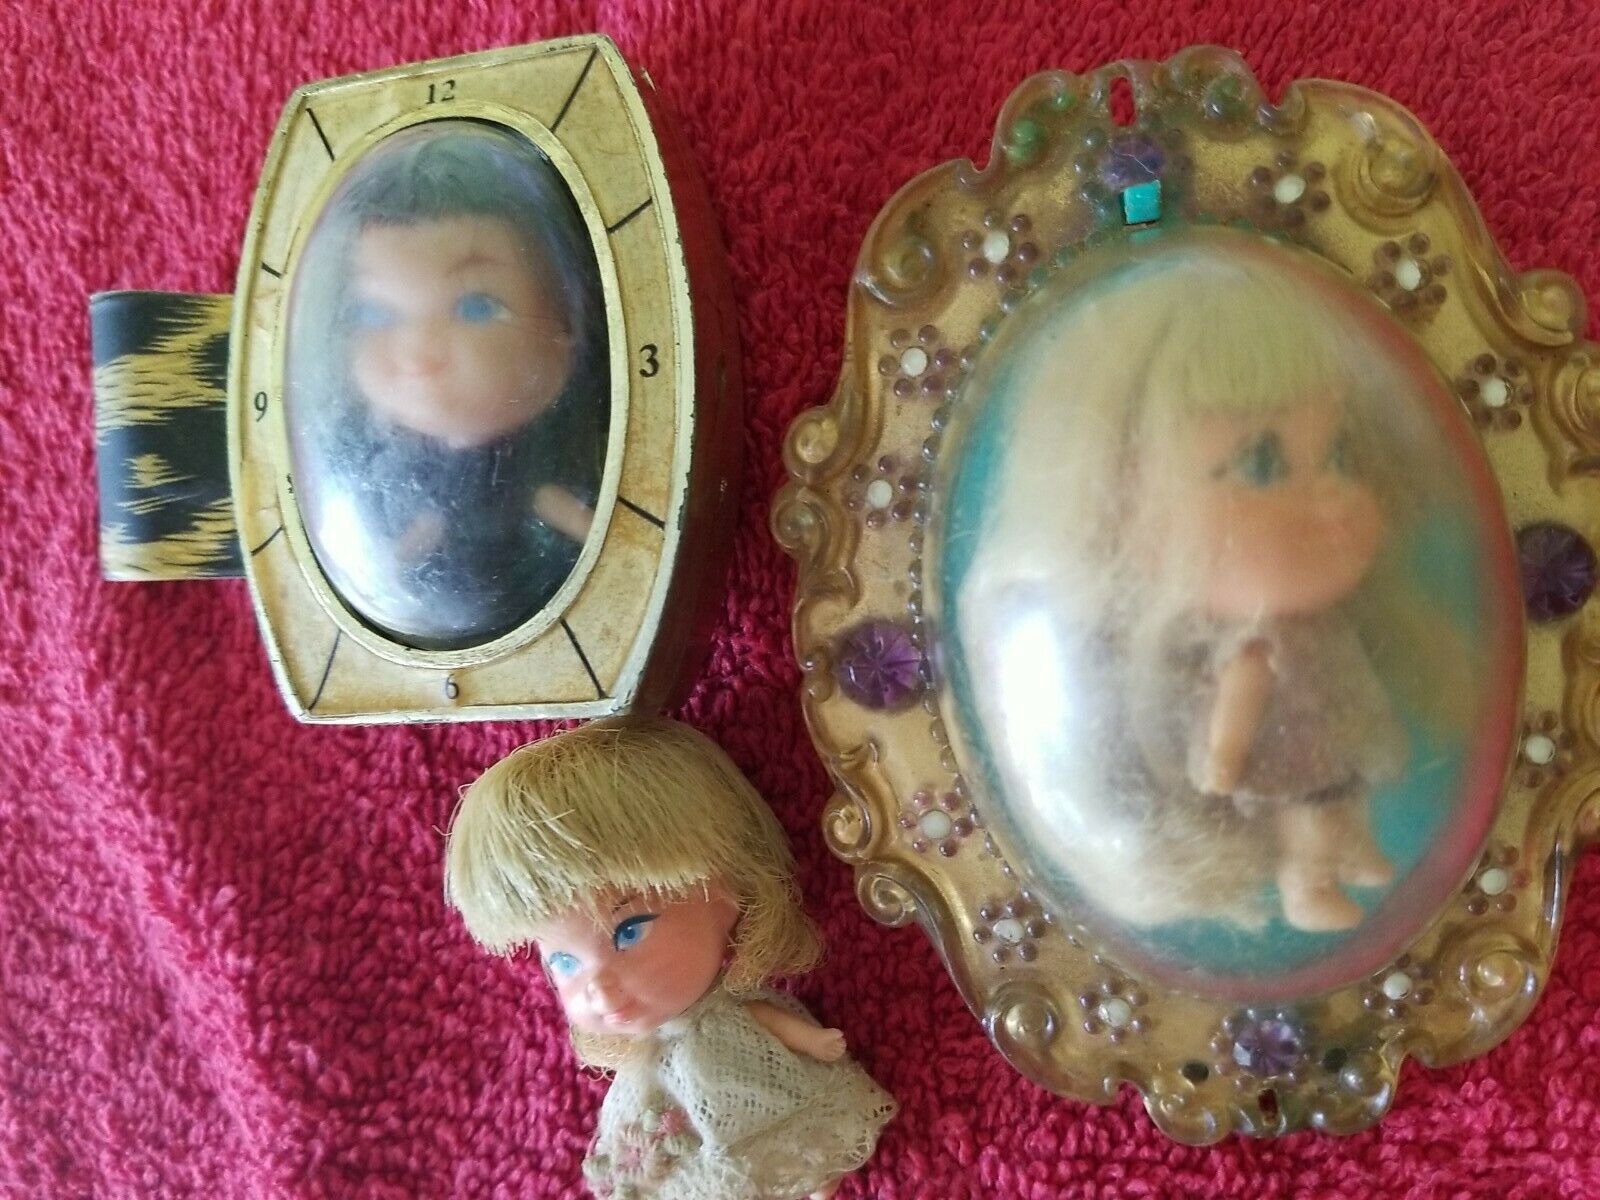 Vintage 3 Liddle Kiddles Lucky Locket Mattel Little Dolls watch case